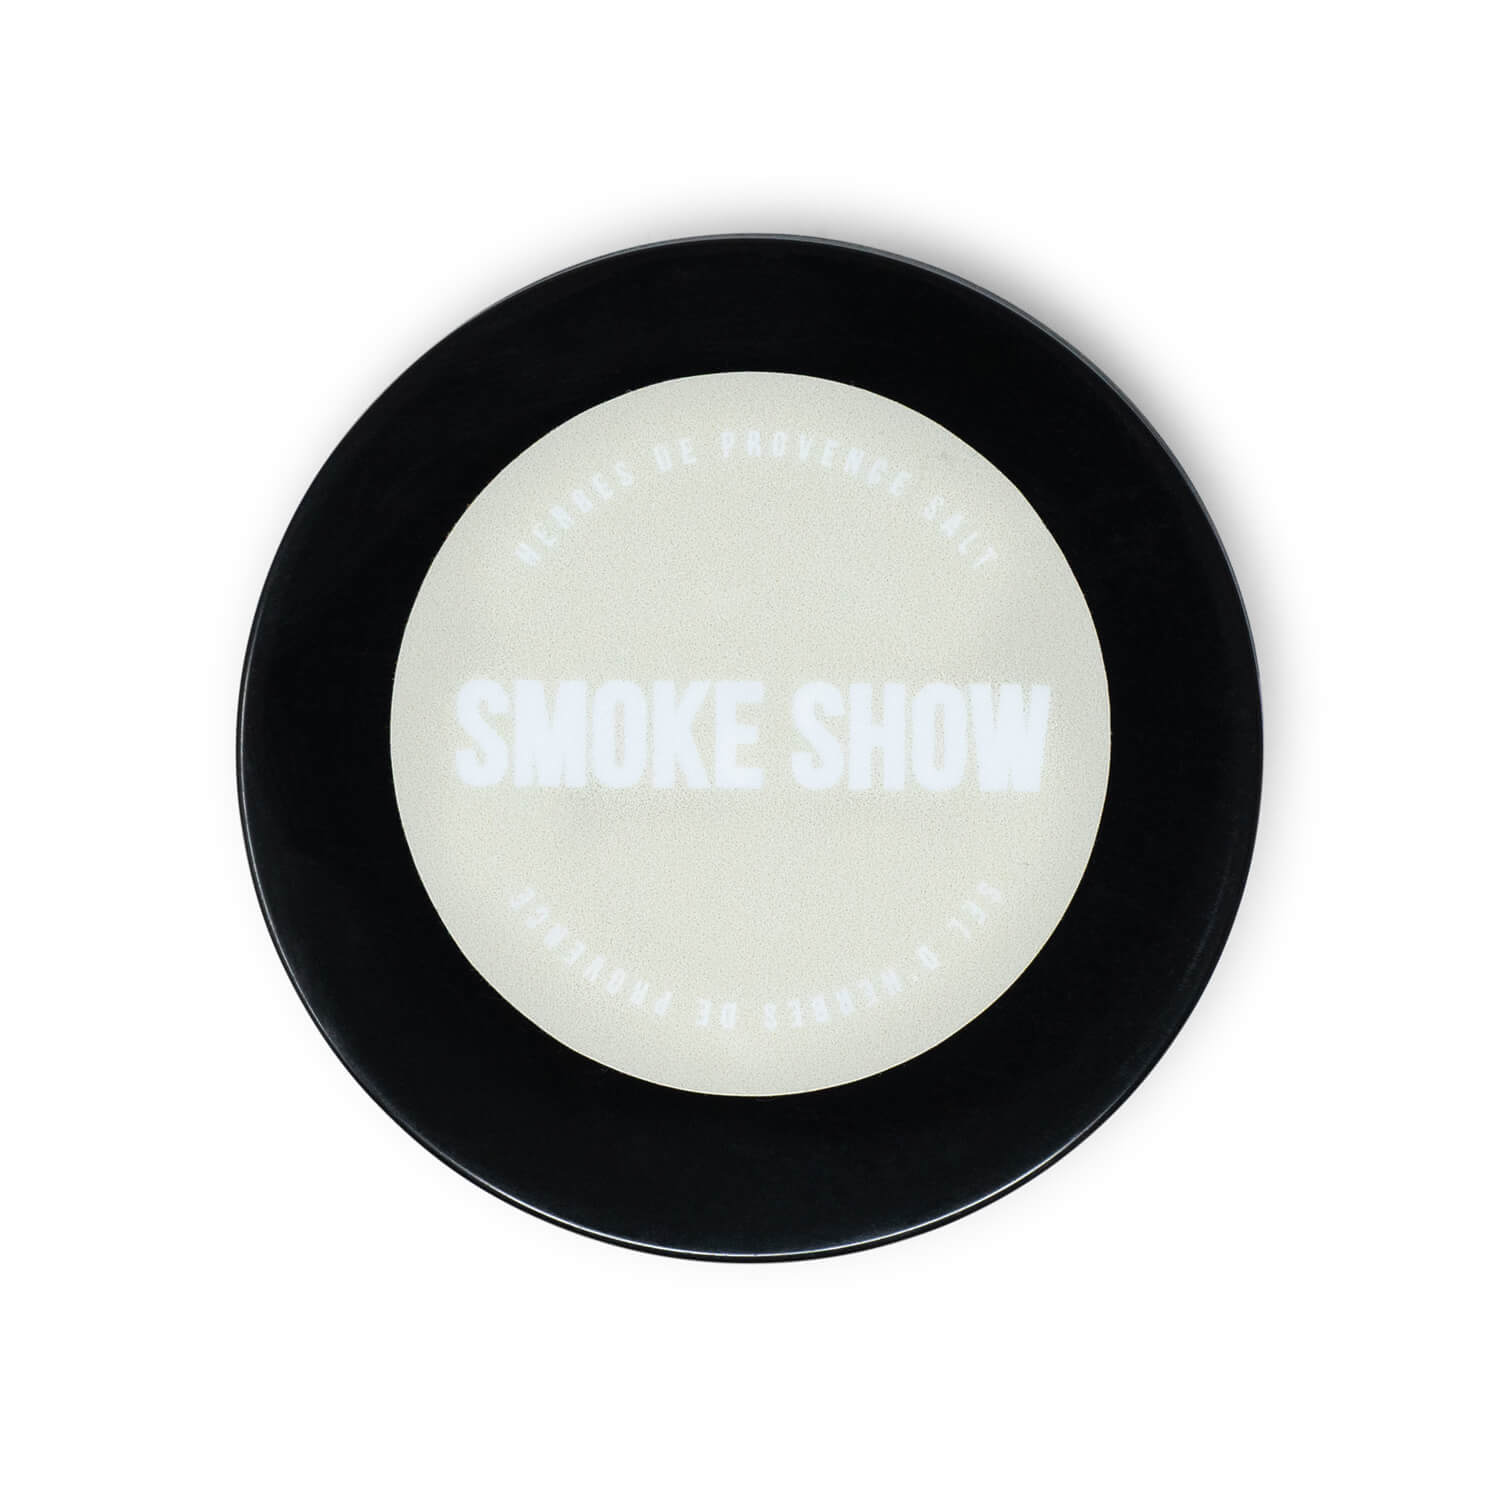 Smoke Show Herbes de Provence